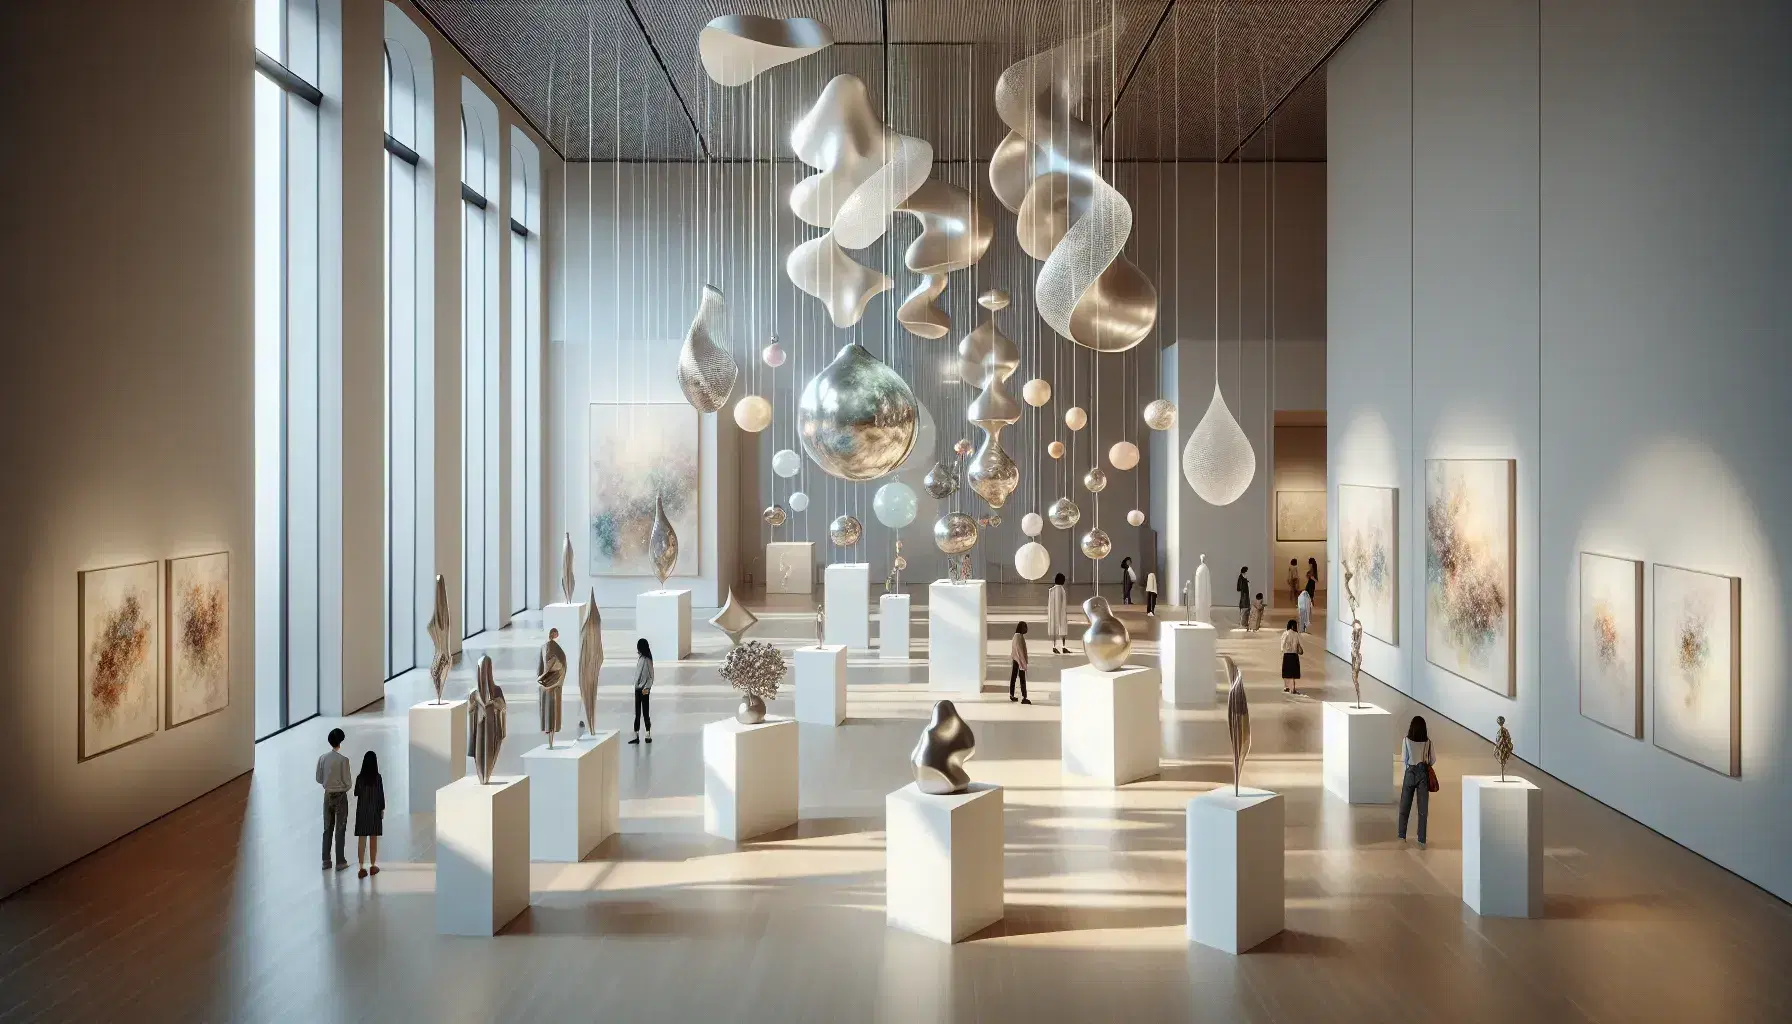 Interior de museo contemporáneo con pedestales blancos exhibiendo esculturas abstractas y una instalación artística colgante, visitantes contemplando las obras y escalera de caracol metálica.